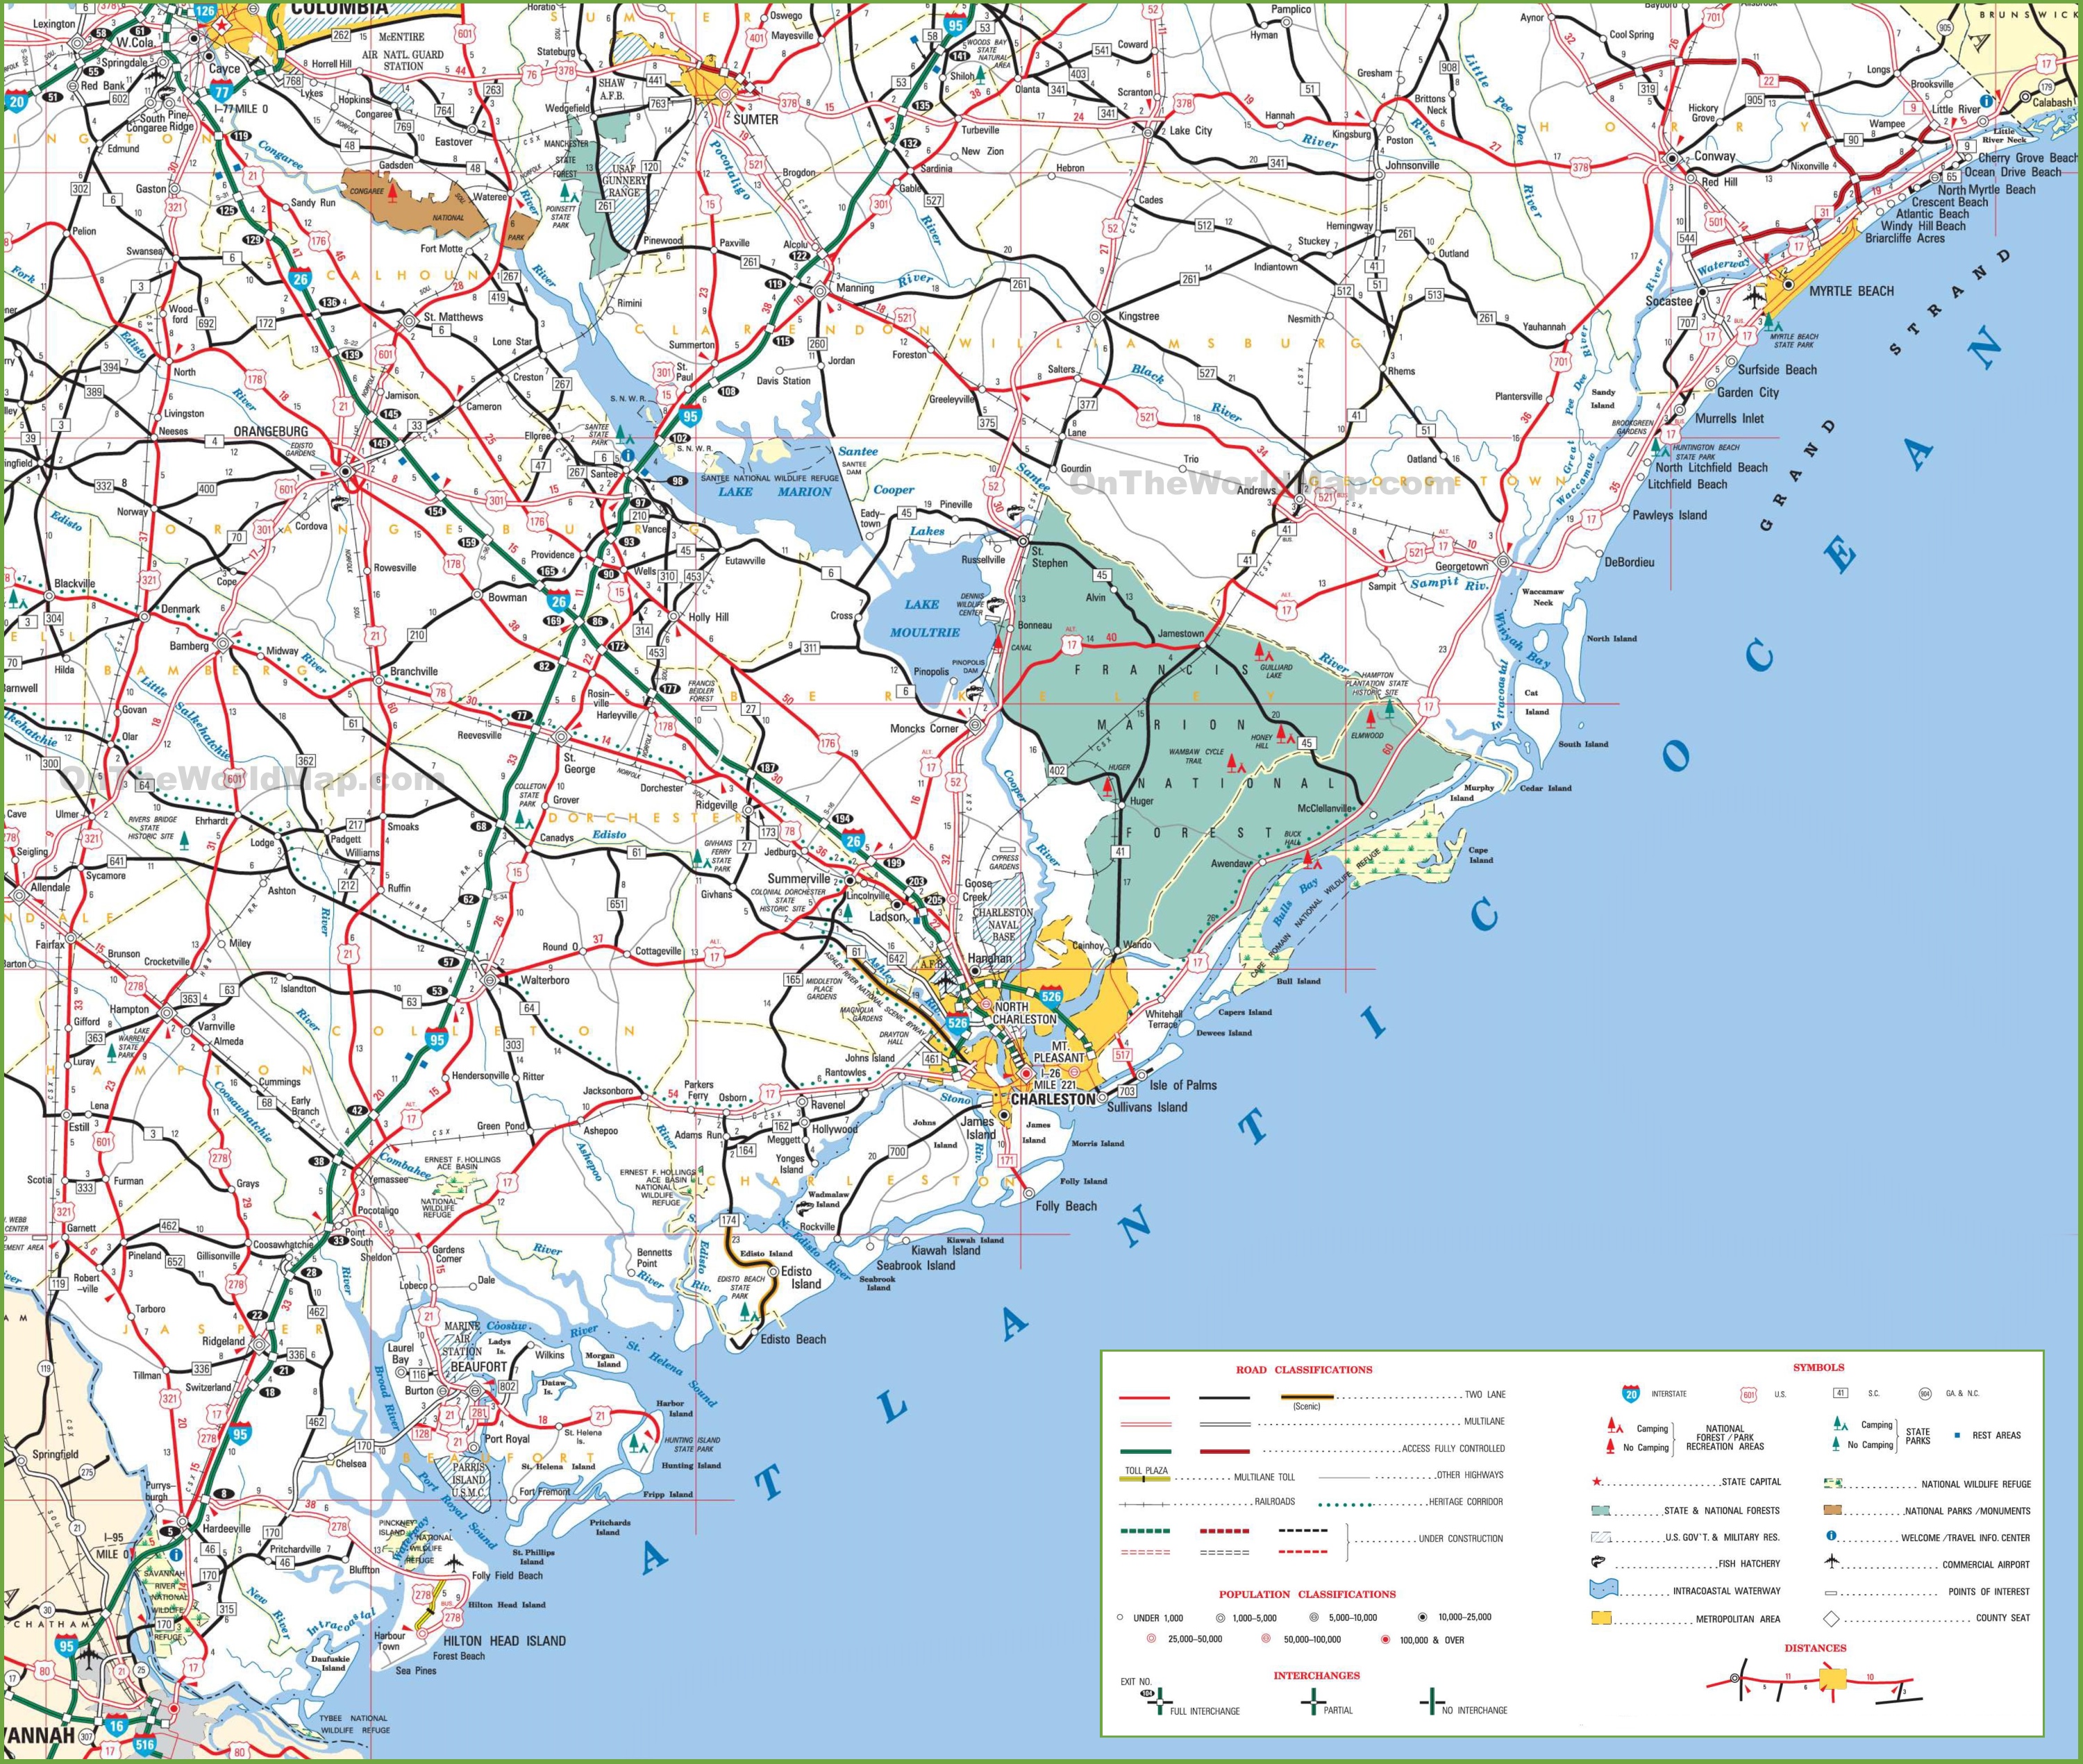 South Carolina Sea Islands Map And Map Of The South Carolina Sea